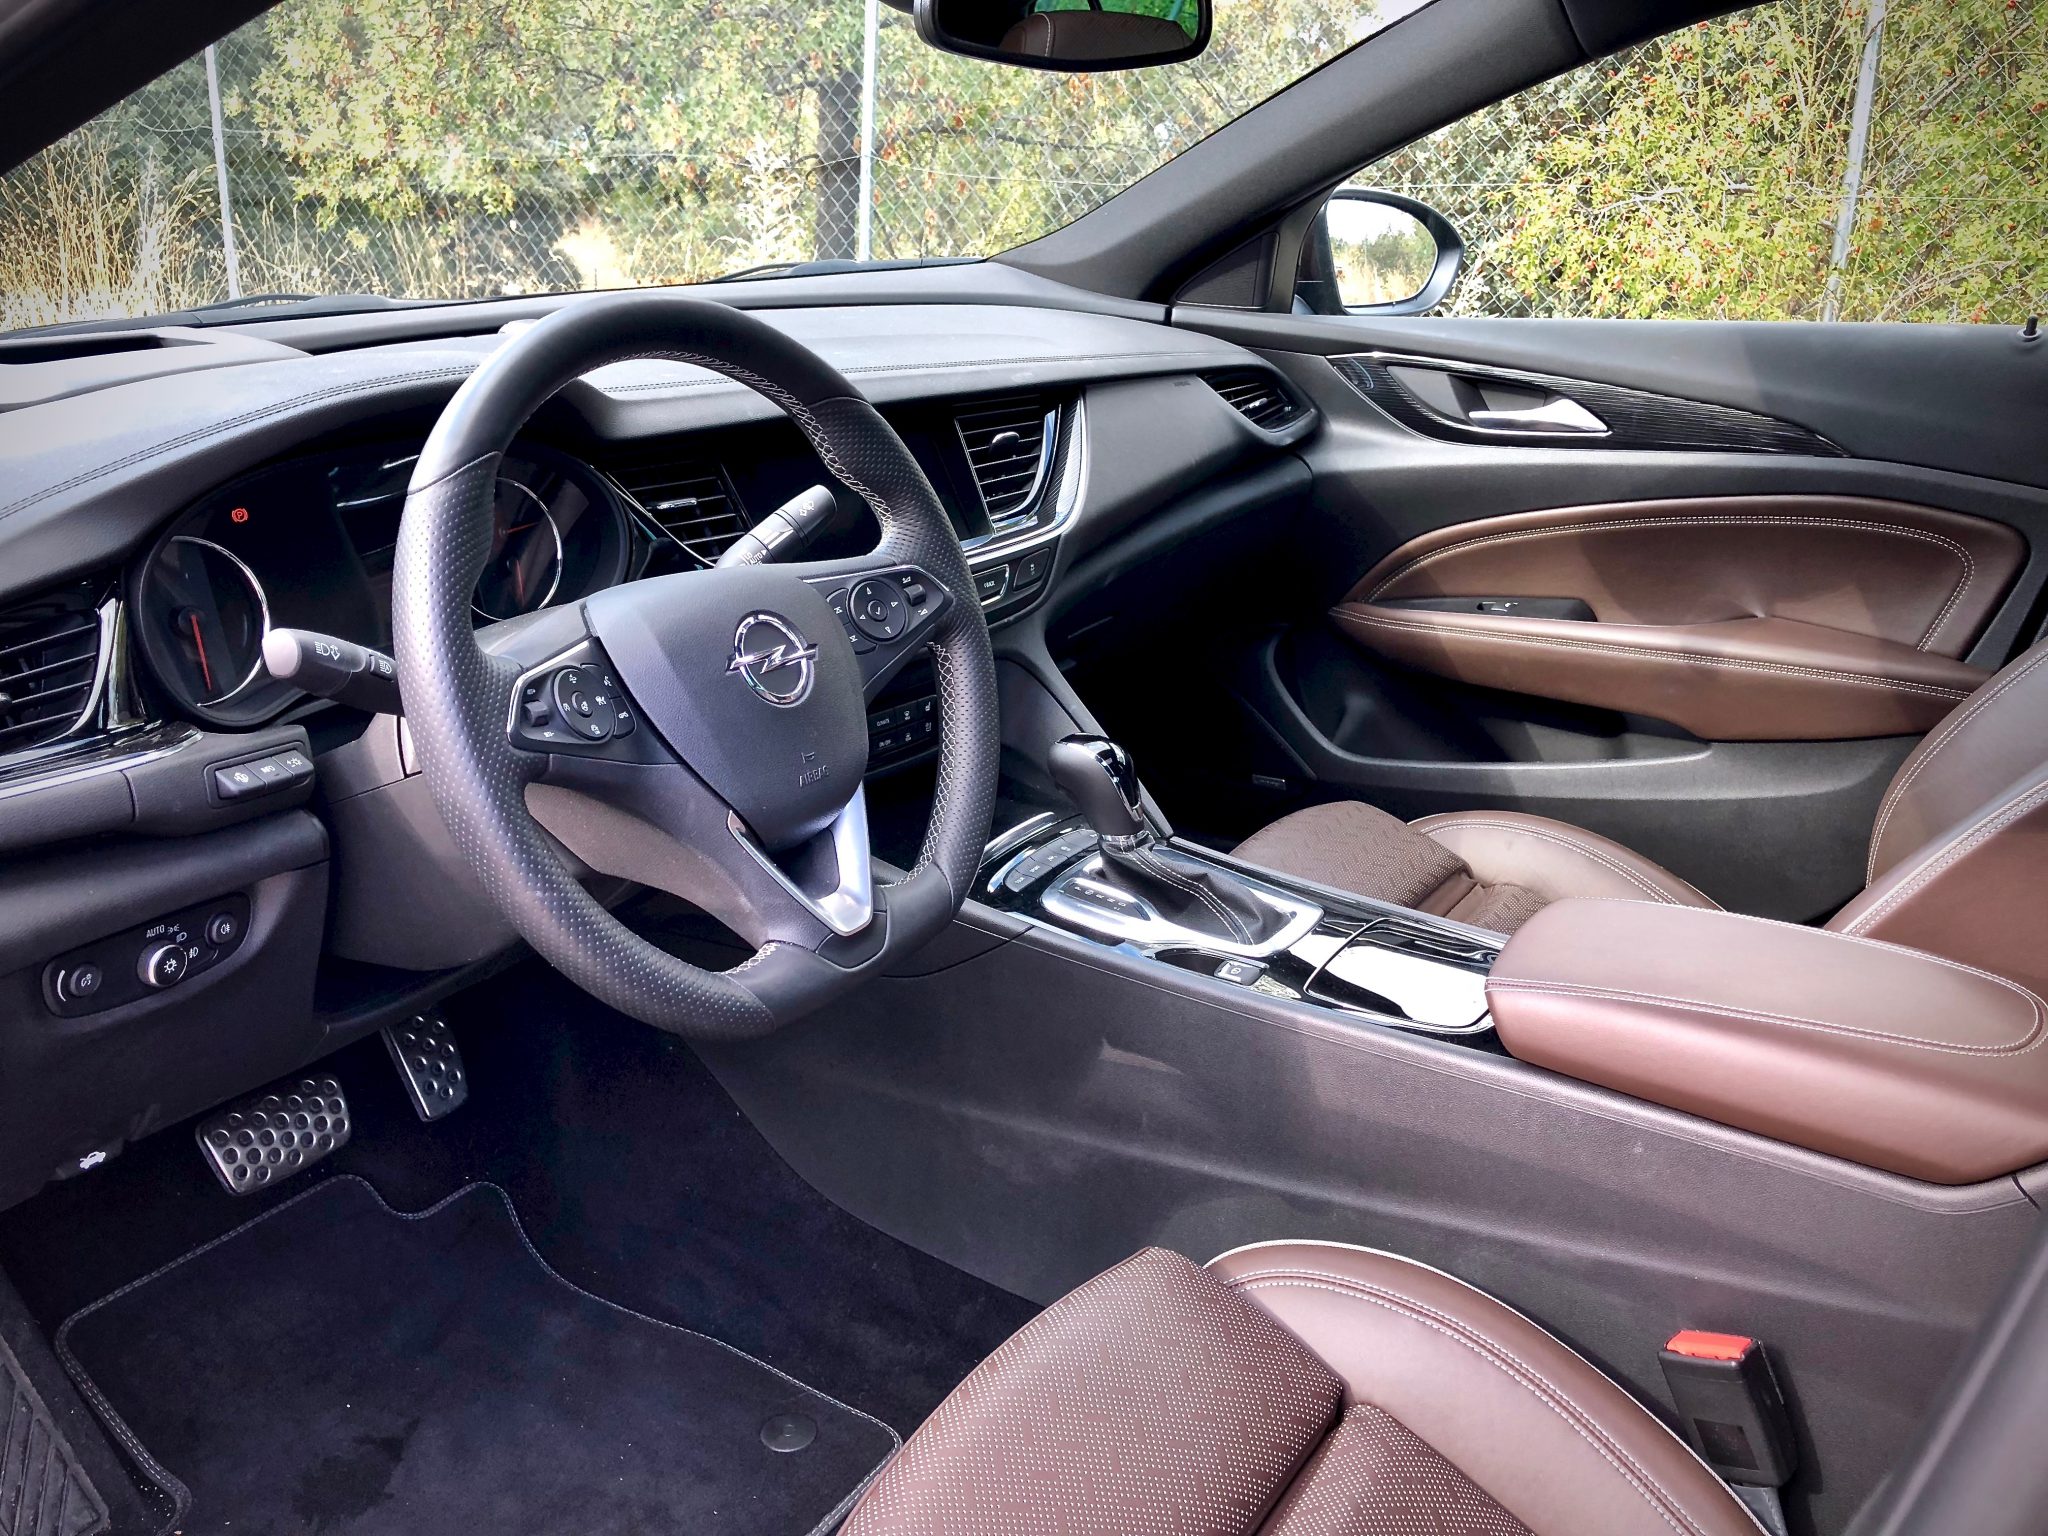 Interior - Opel Insignia Grand Sport 1.6 CDTI 136 CV